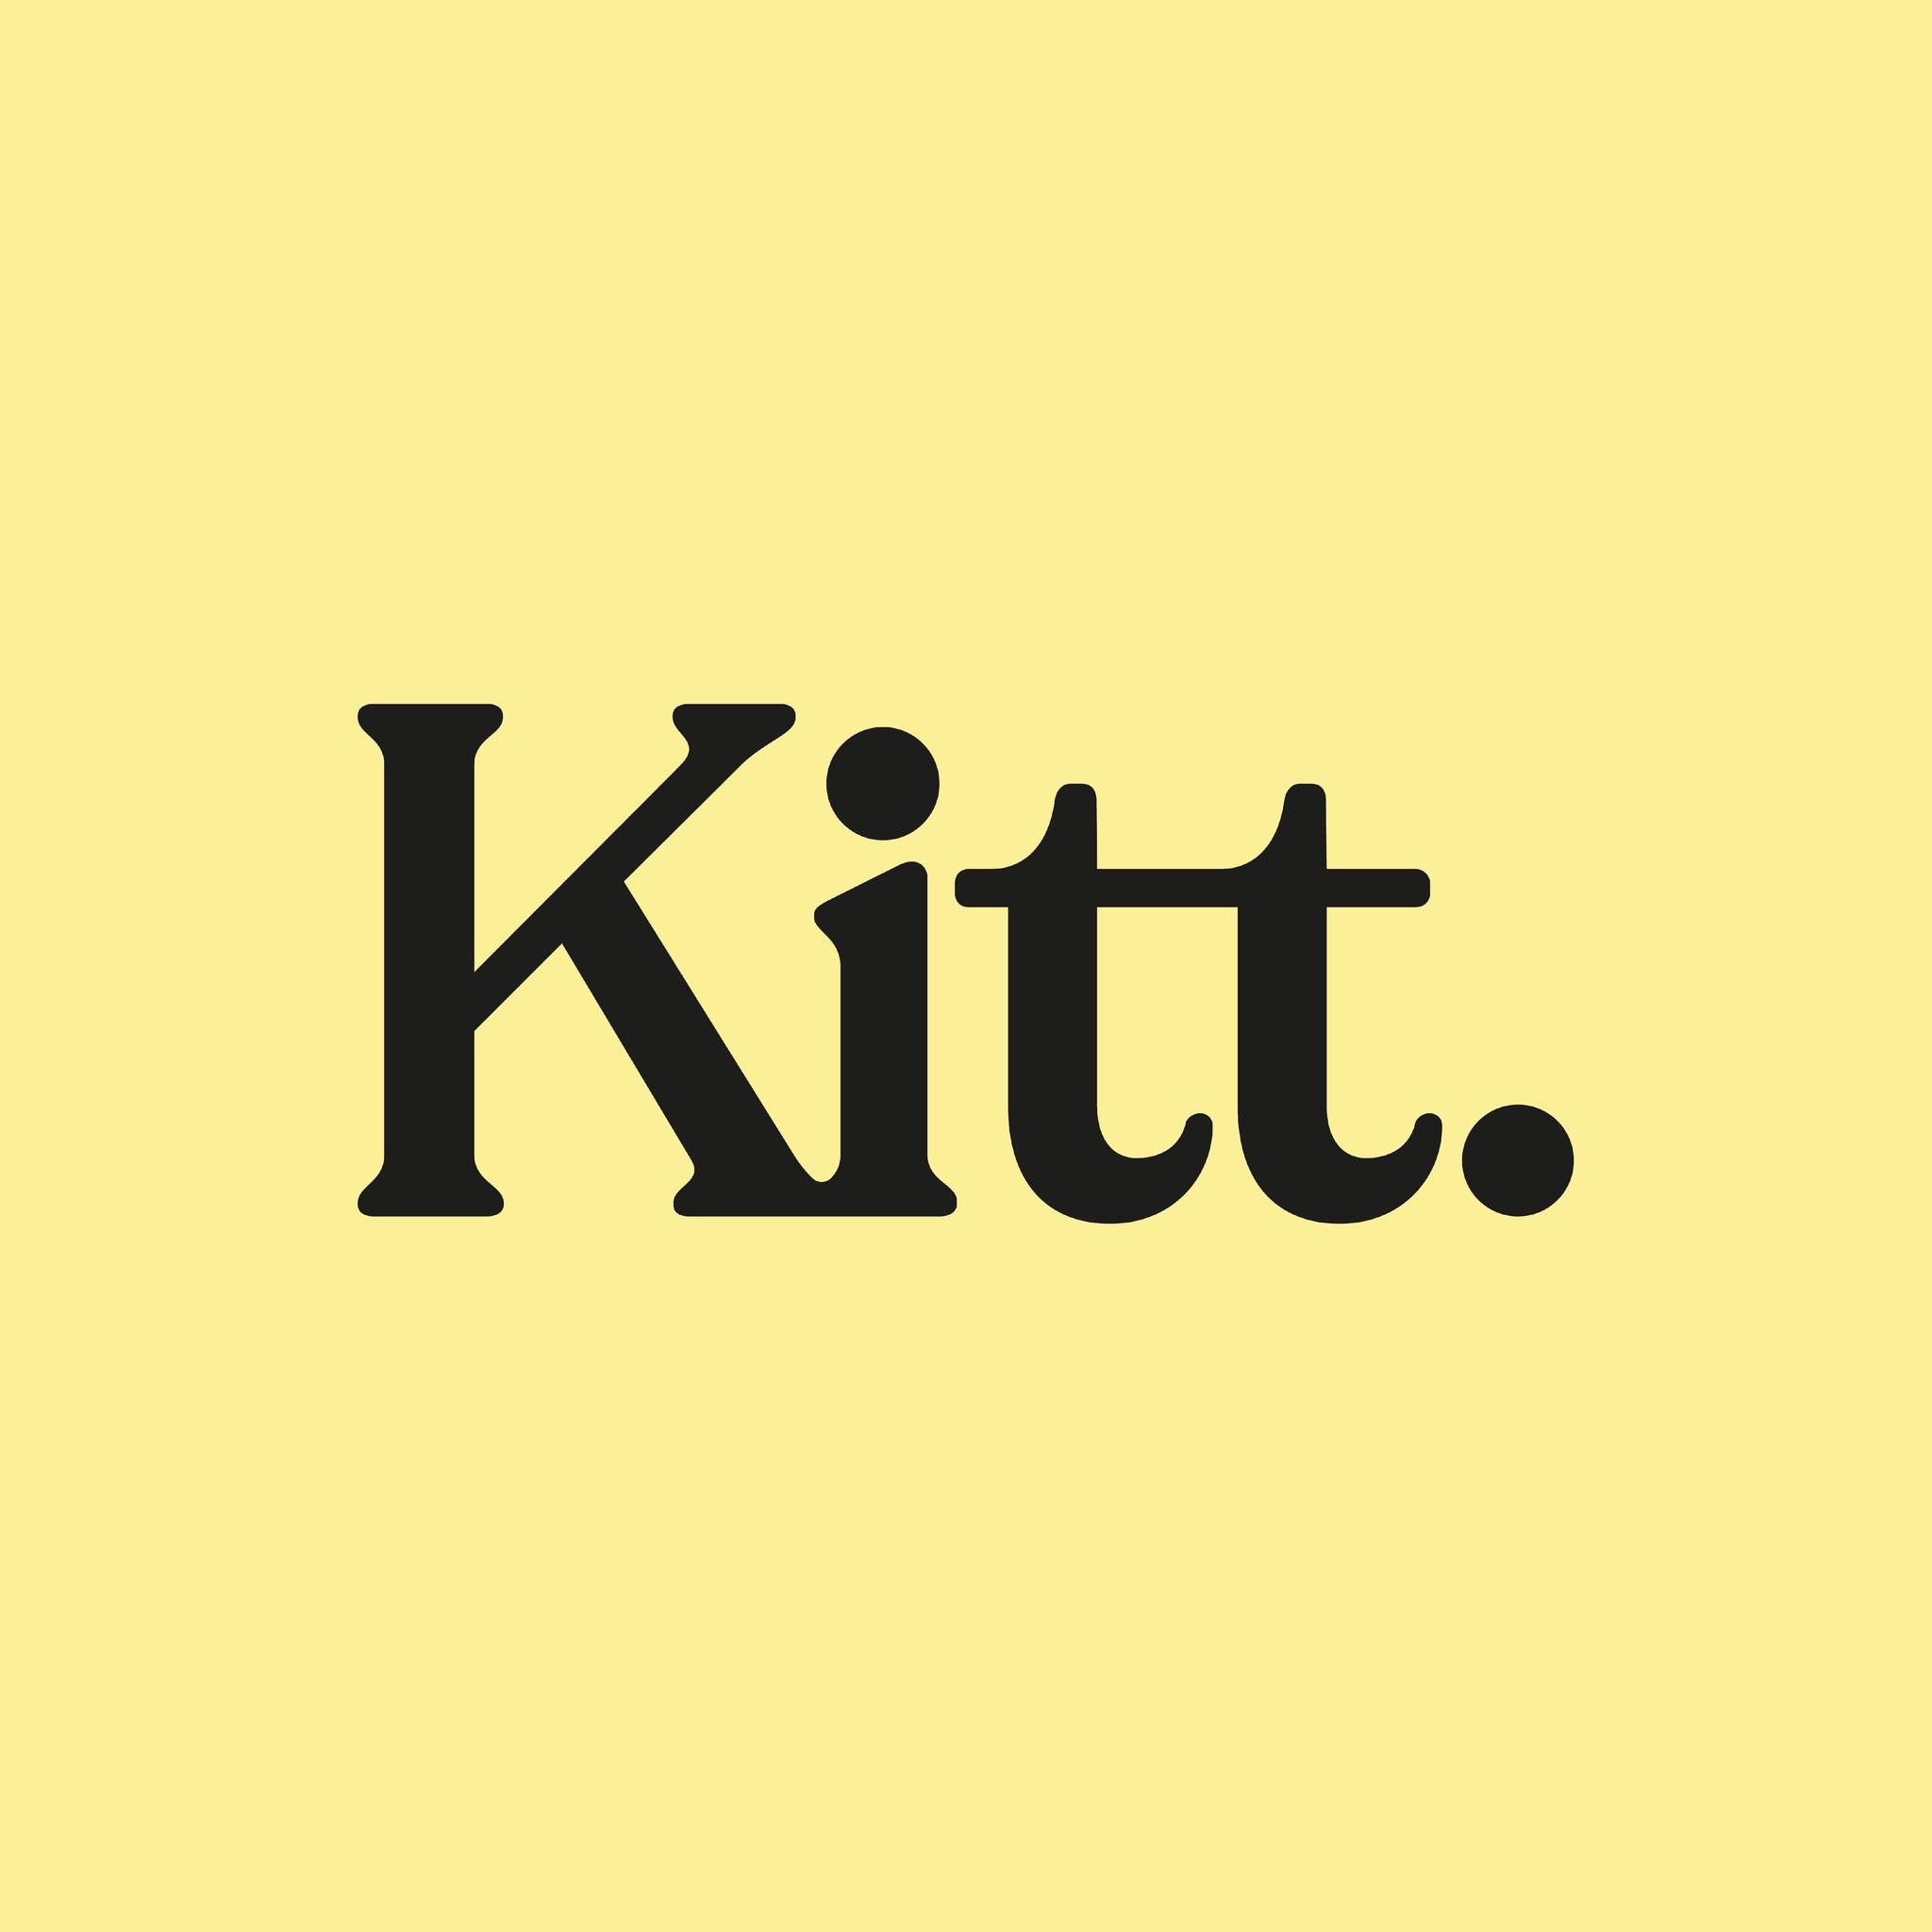 Kitt